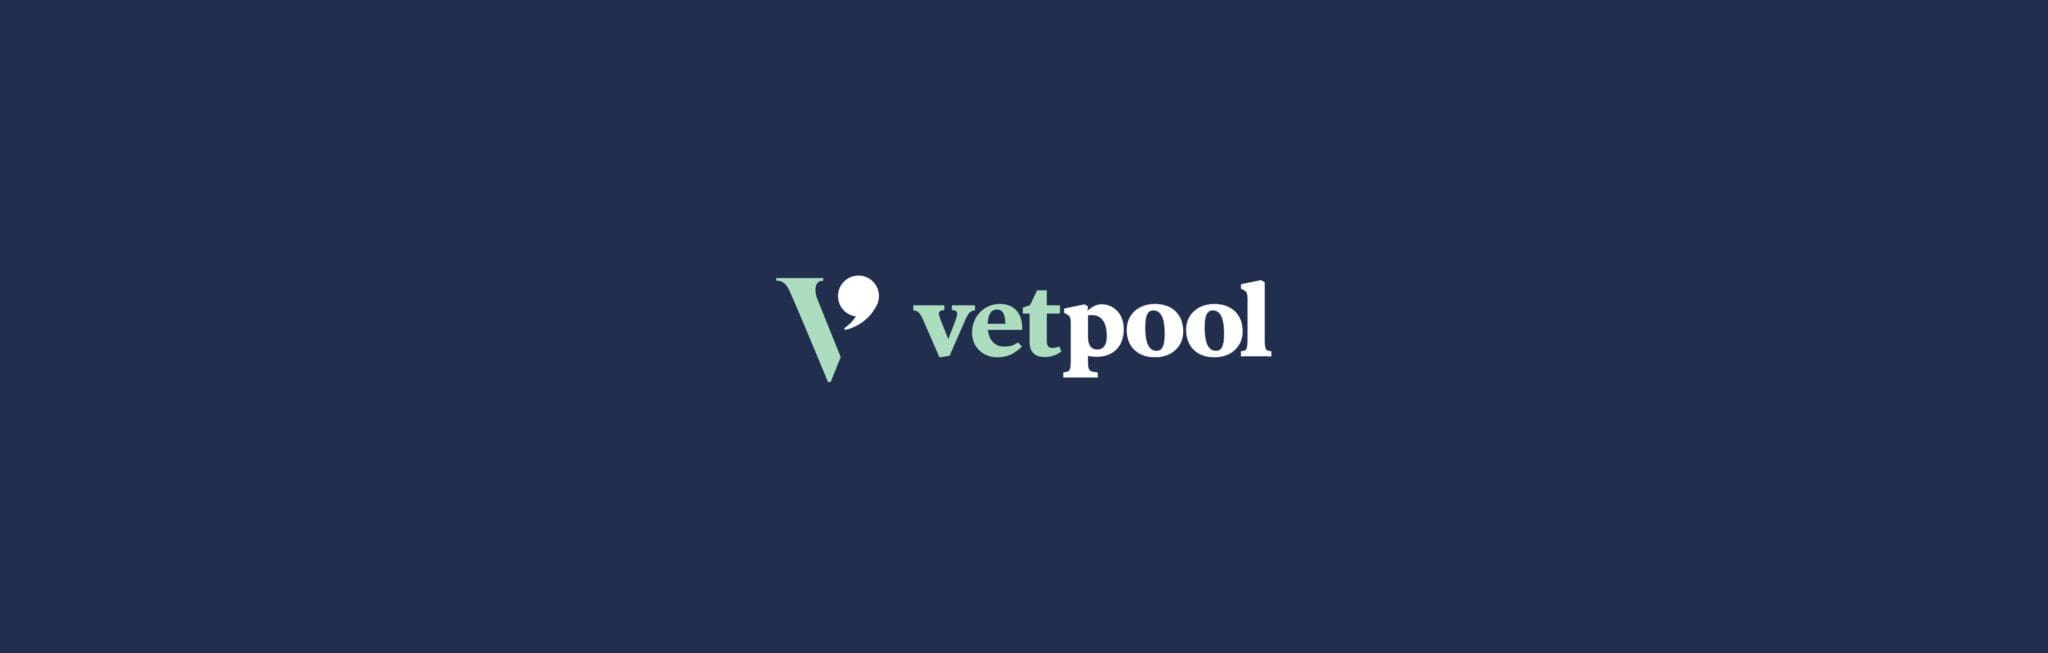 VetPool-01